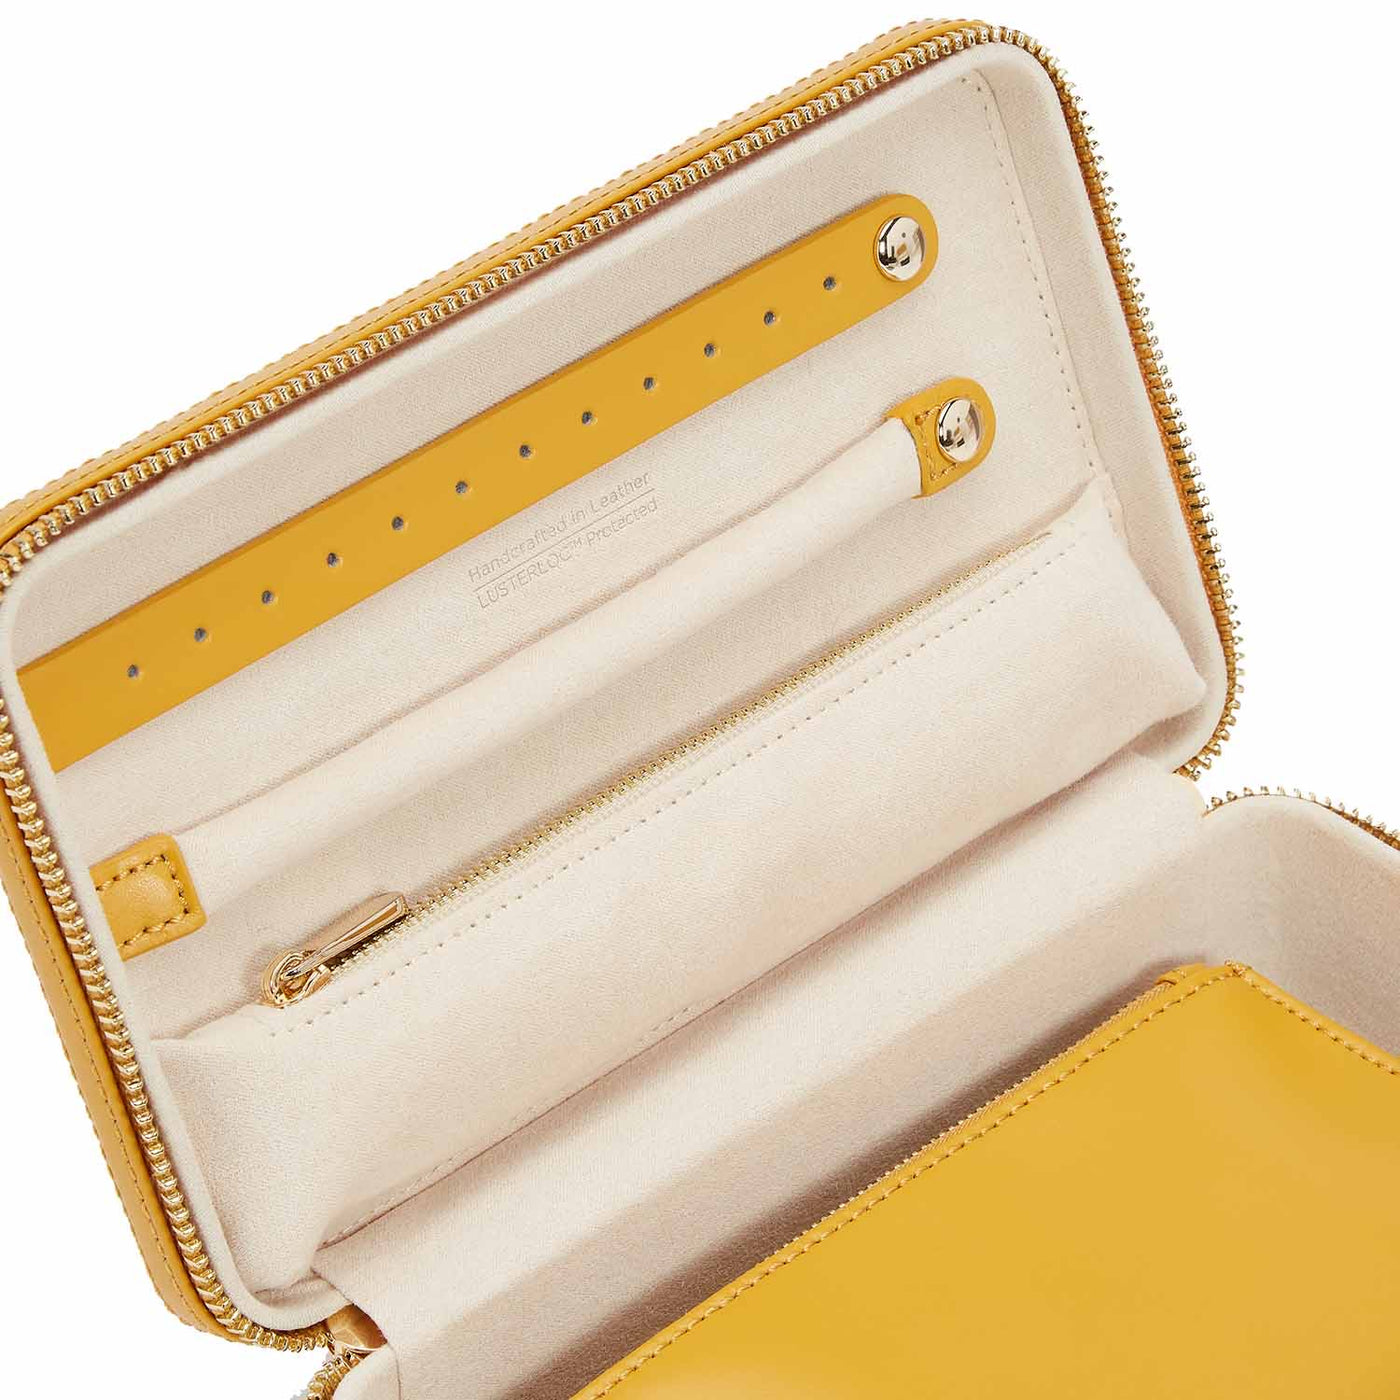 Maria Medium Zip Case (Mustard) - Lauren Sigman Collection